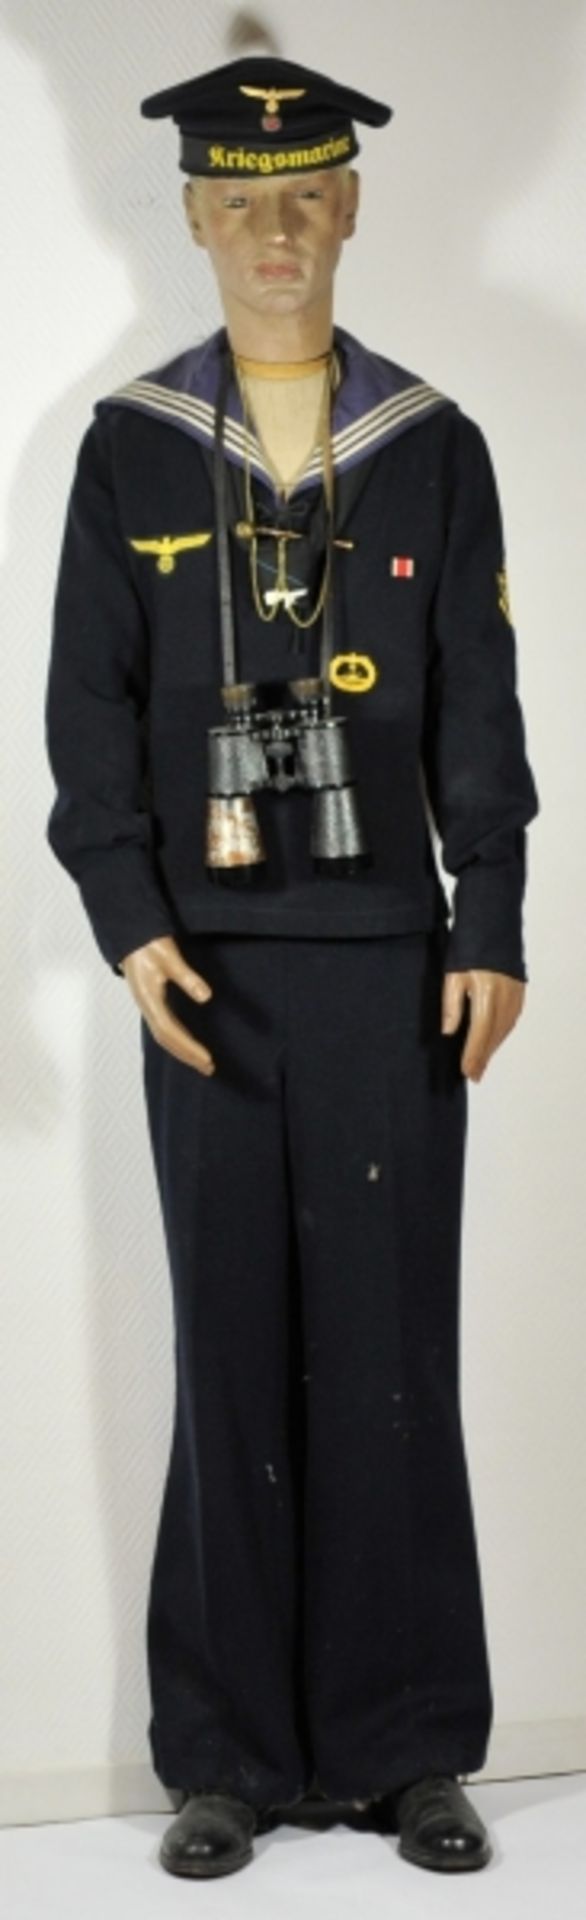 Uniformensemble eines Ober-Torpedo-Mechanikermaat der Kriegsmarine.Blaues Hemd für Mannschaften